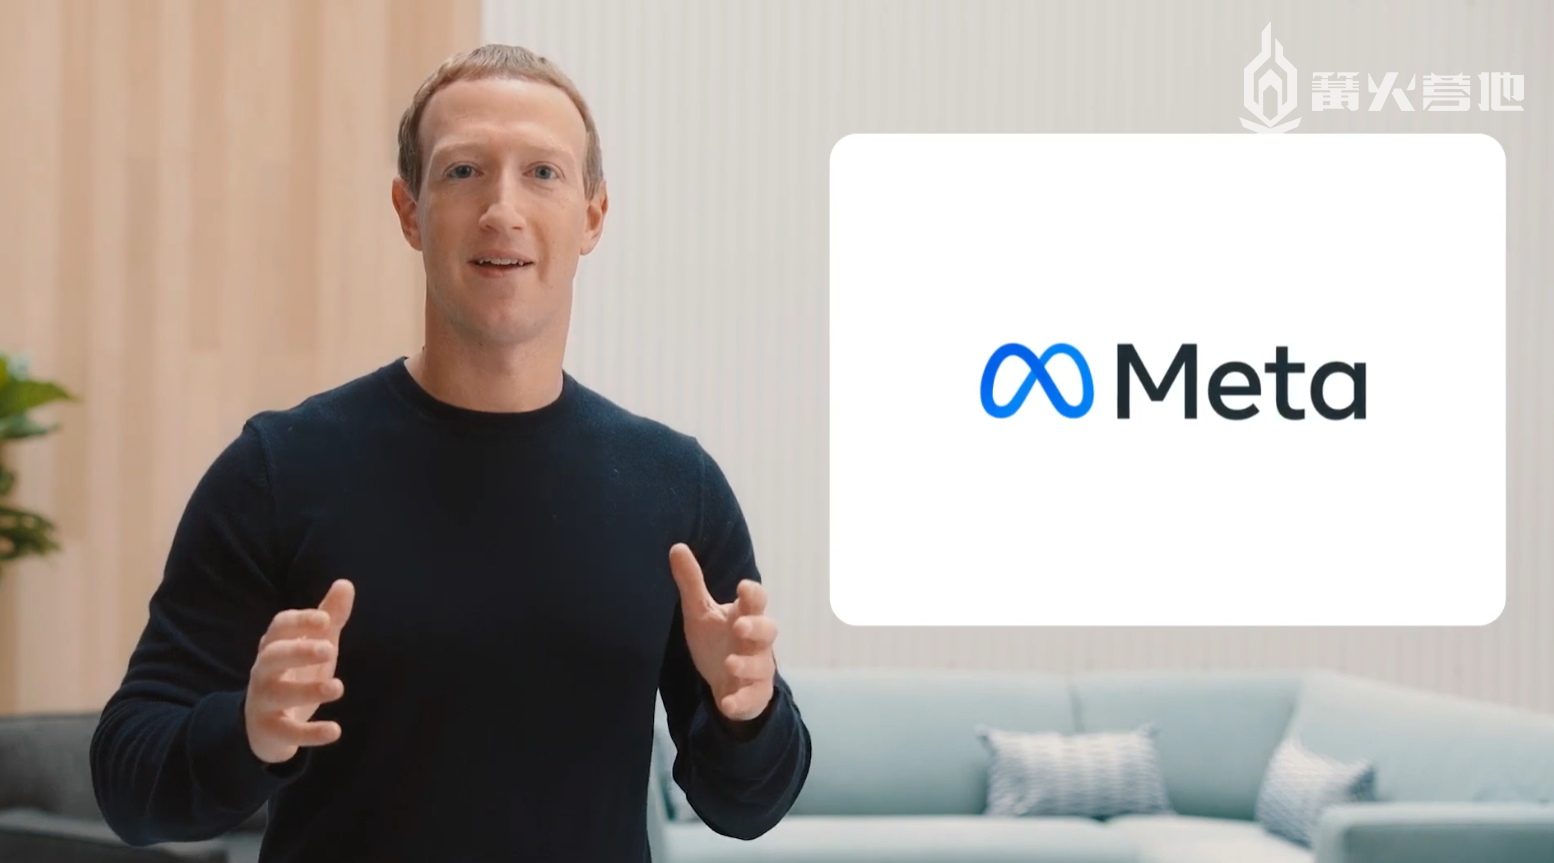 为了在「元宇宙」发展中抢占先机，Facebook 甚至改名「Meta」